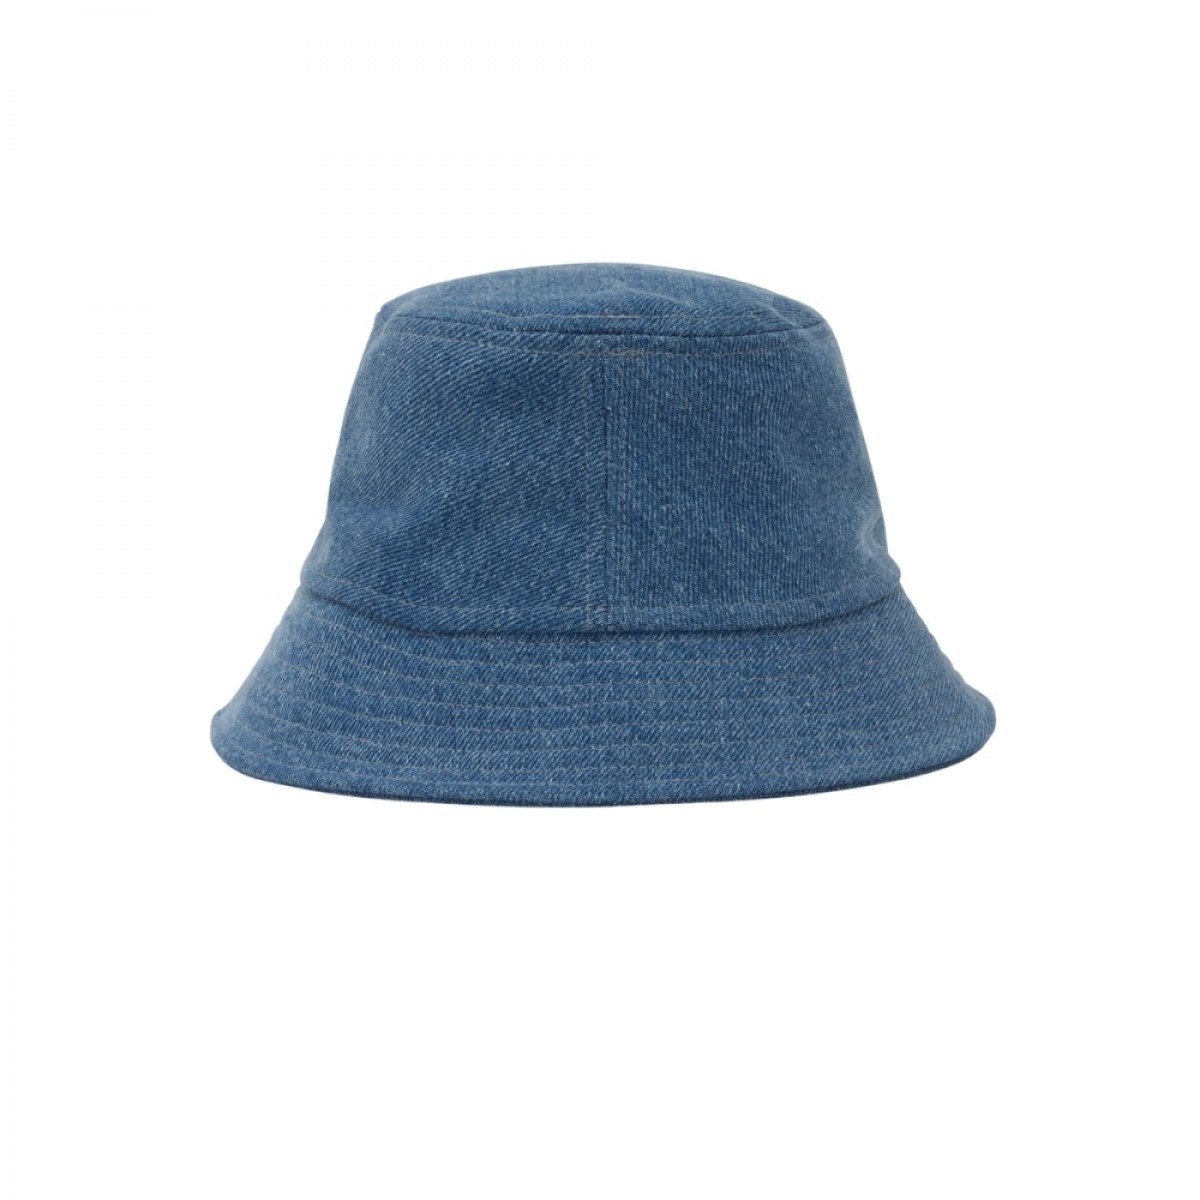 haley logo hat - light blue - bagfra 